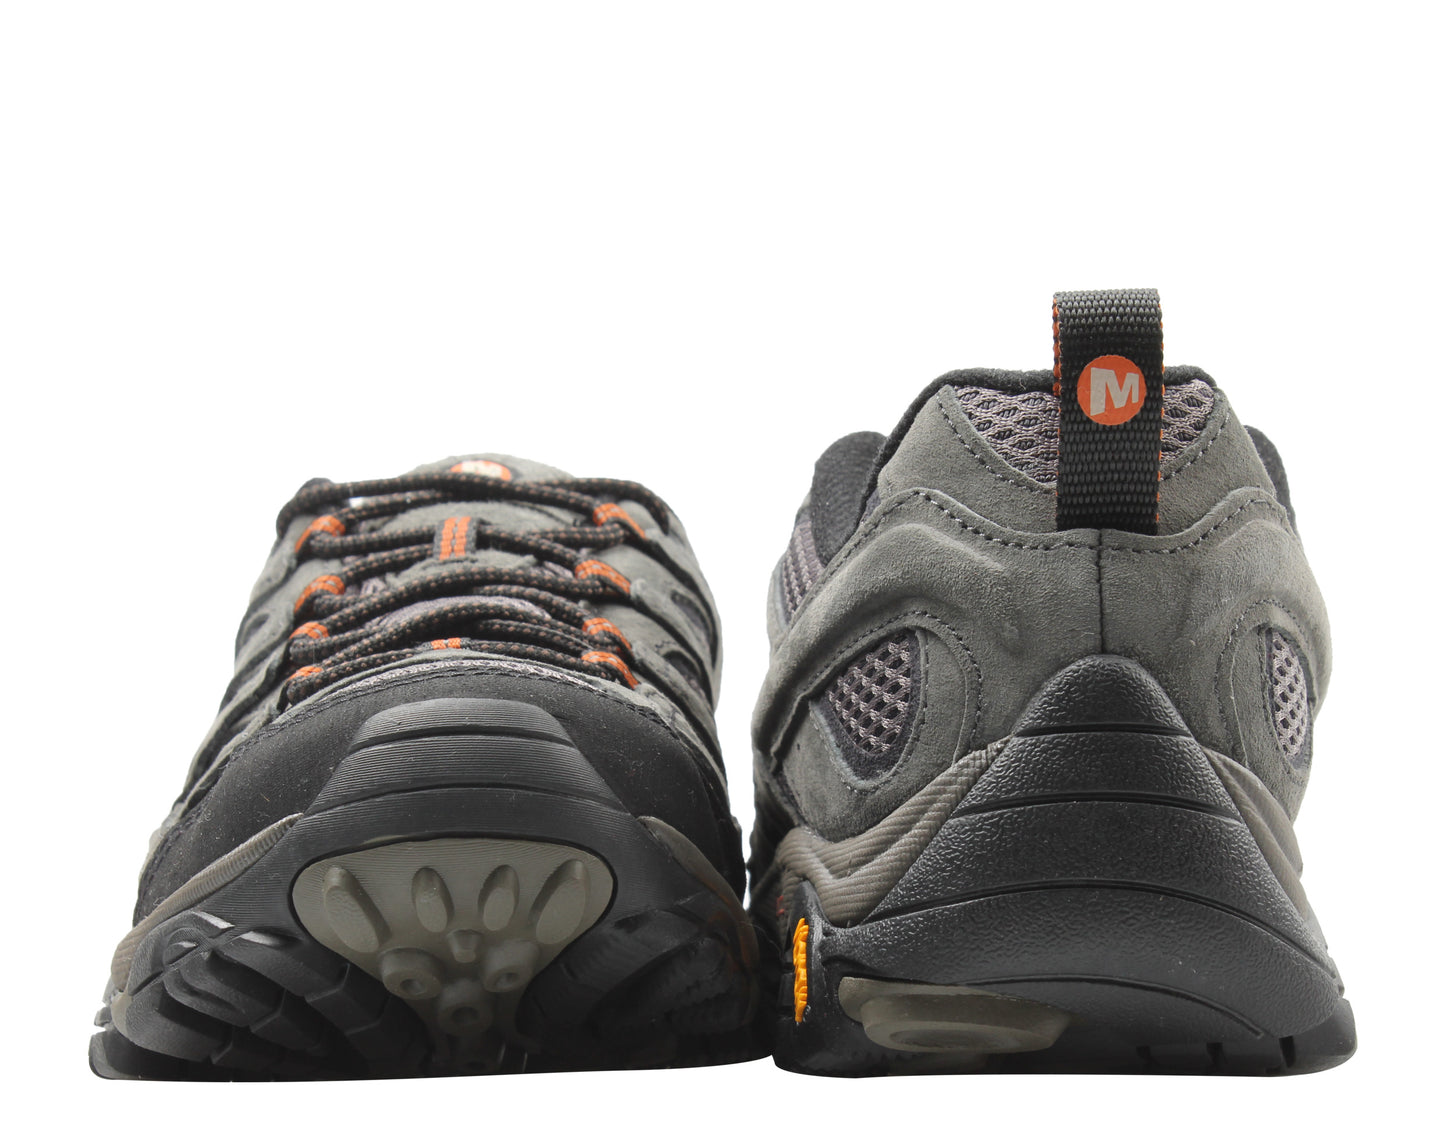 Merrell Moab 2 Ventilator Beluga Grey Men's Hiking Shoes J06015